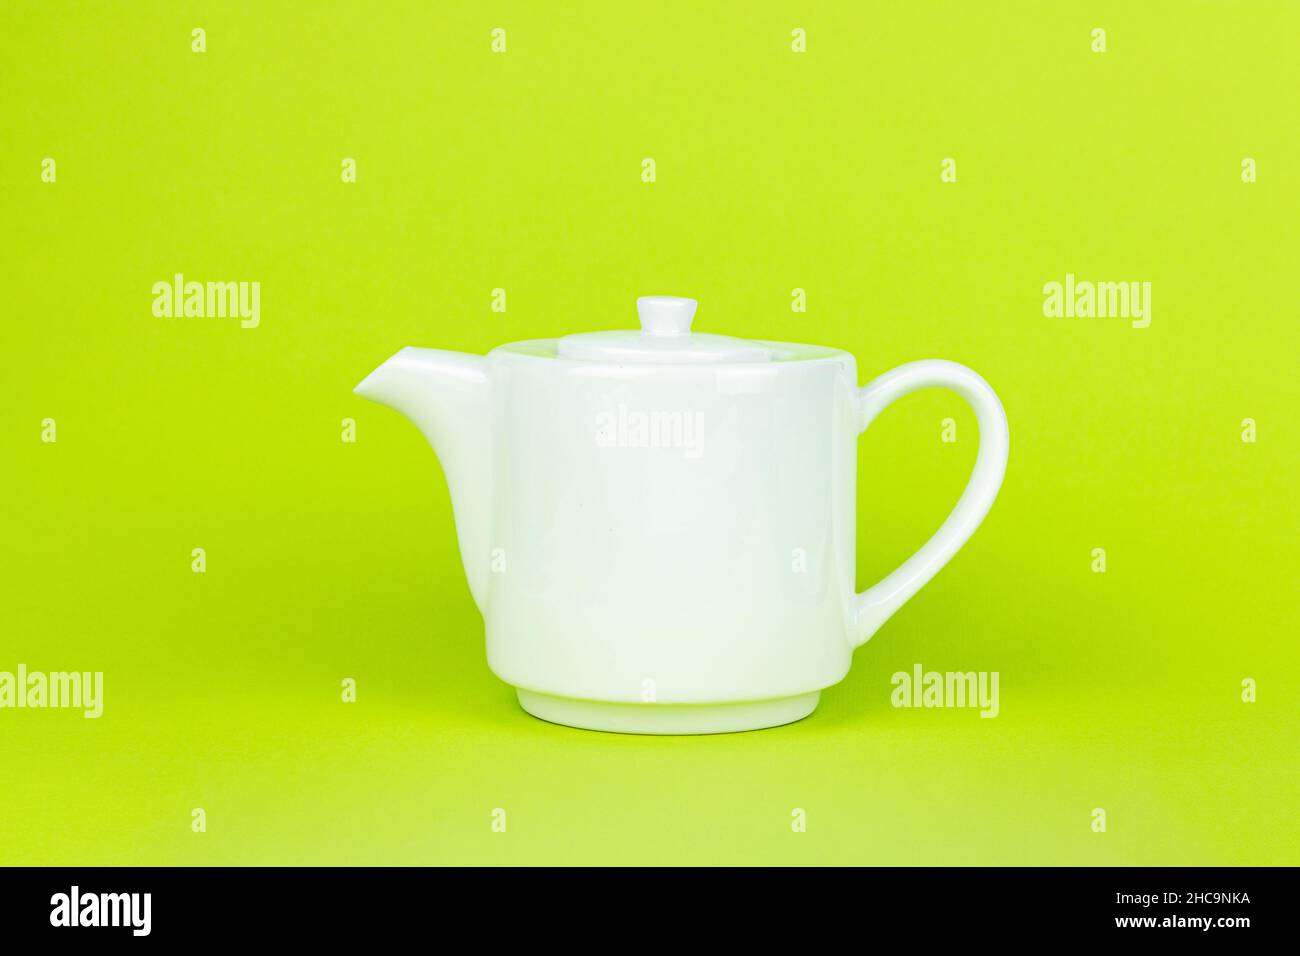 Théière en céramique blanche sur fond vert.Concept thé avec théière blanche. Banque D'Images